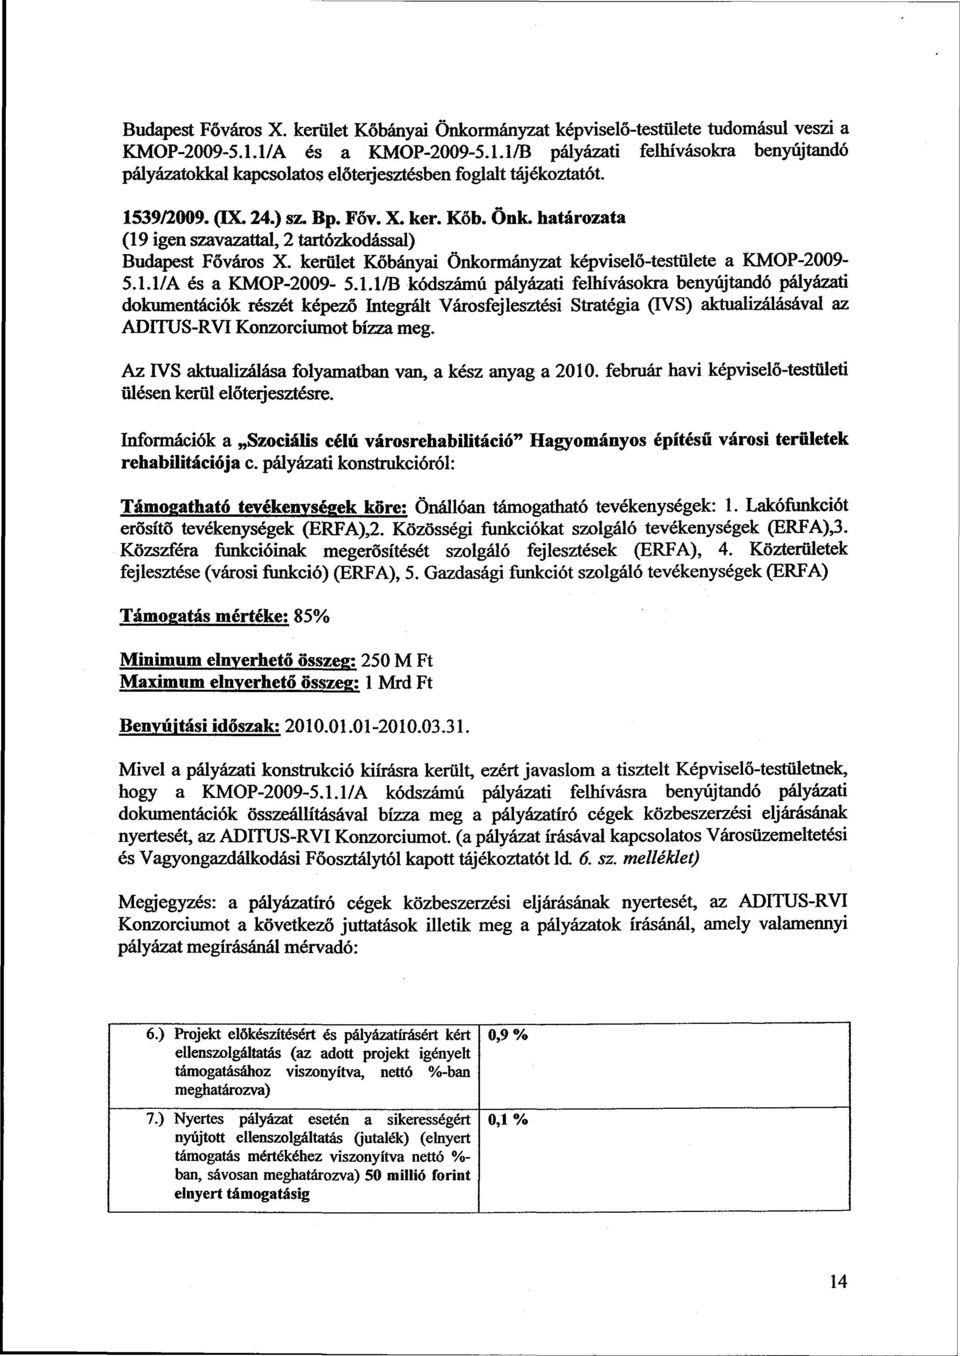 határozata (19 igen szavazattal, 2 tartózkodással) Budapest Főváros X. kerület Kőbányai Önkormányzat képviselő-testülete a KMOP-2009-5.1.l/A és a KMOP-2009-5.1.1/B kódszámú pályázati felhívásokra benyújtandó pályázati dokumentációk részét képező Integrált Városfejlesztési Stratégia (TVS) aktualizálásával az ADITUS-RVI Konzorciumot bízza meg.